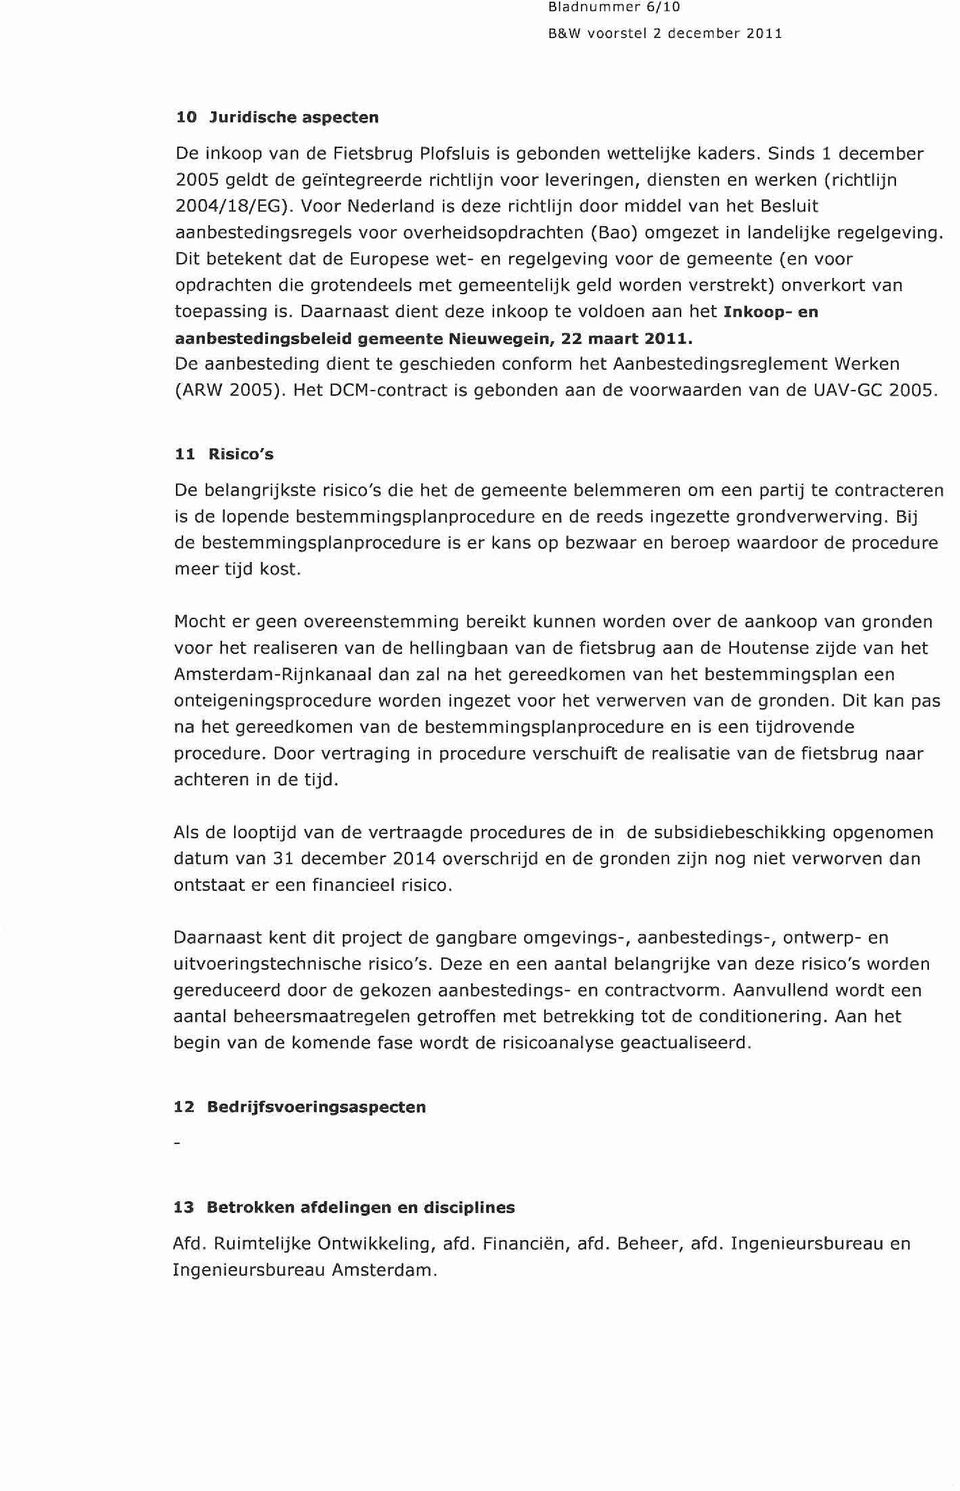 Voor Nederland is deze richtlijn door middel van het Besluit aanbestedingsregels voor overheidsopdrachten (Bao) omgezet in landelijke regelgeving.